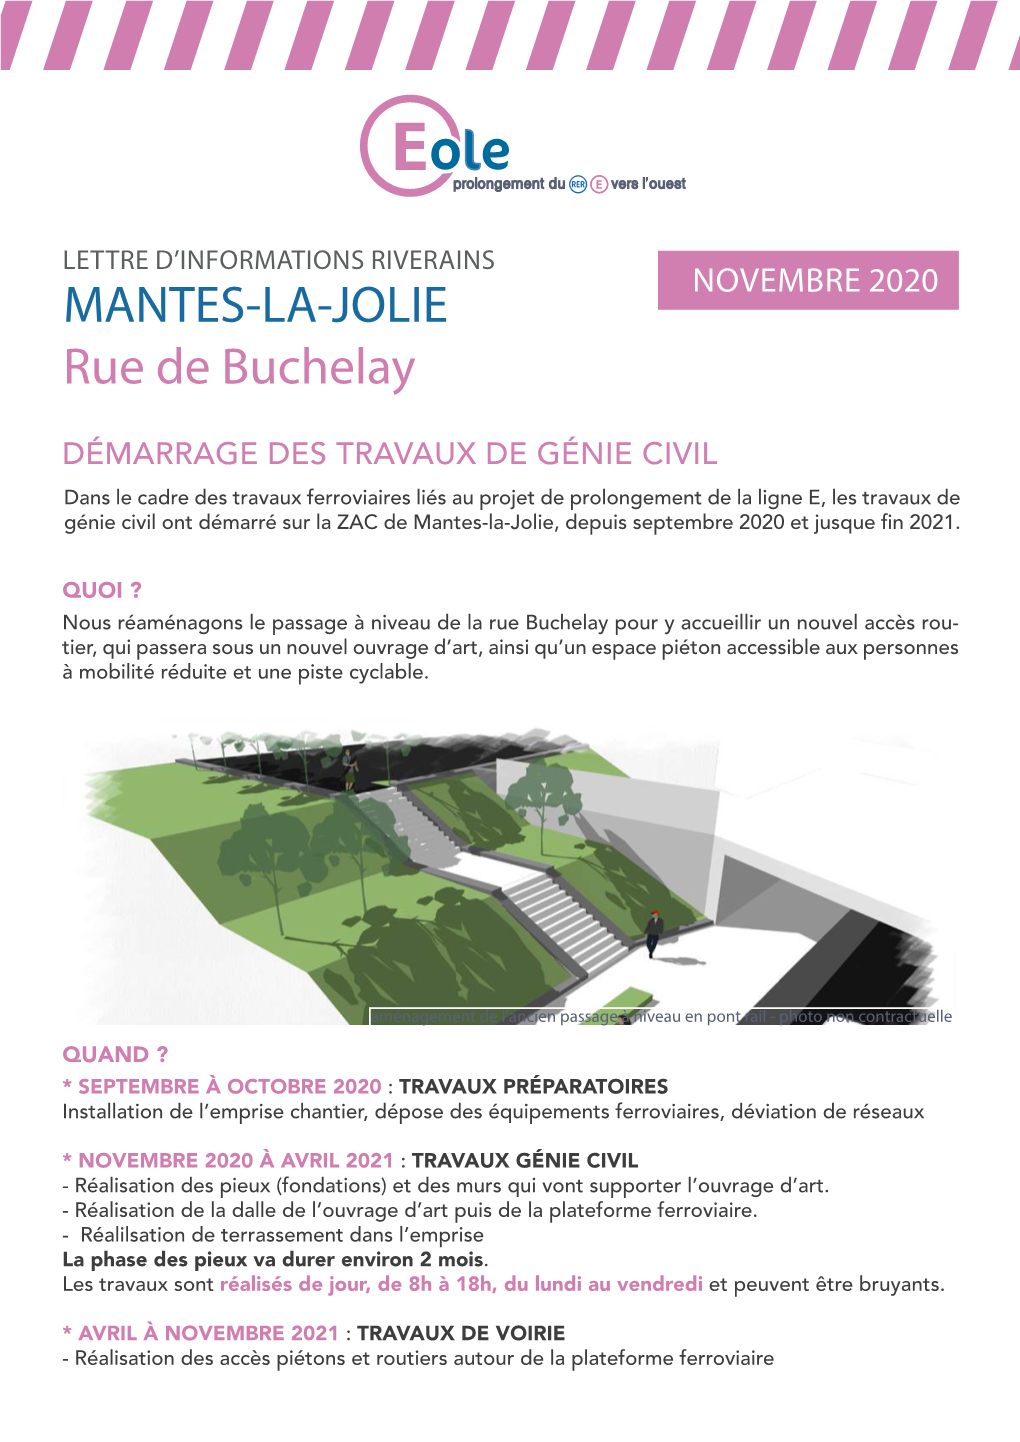 MANTES-LA-JOLIE Rue De Buchelay